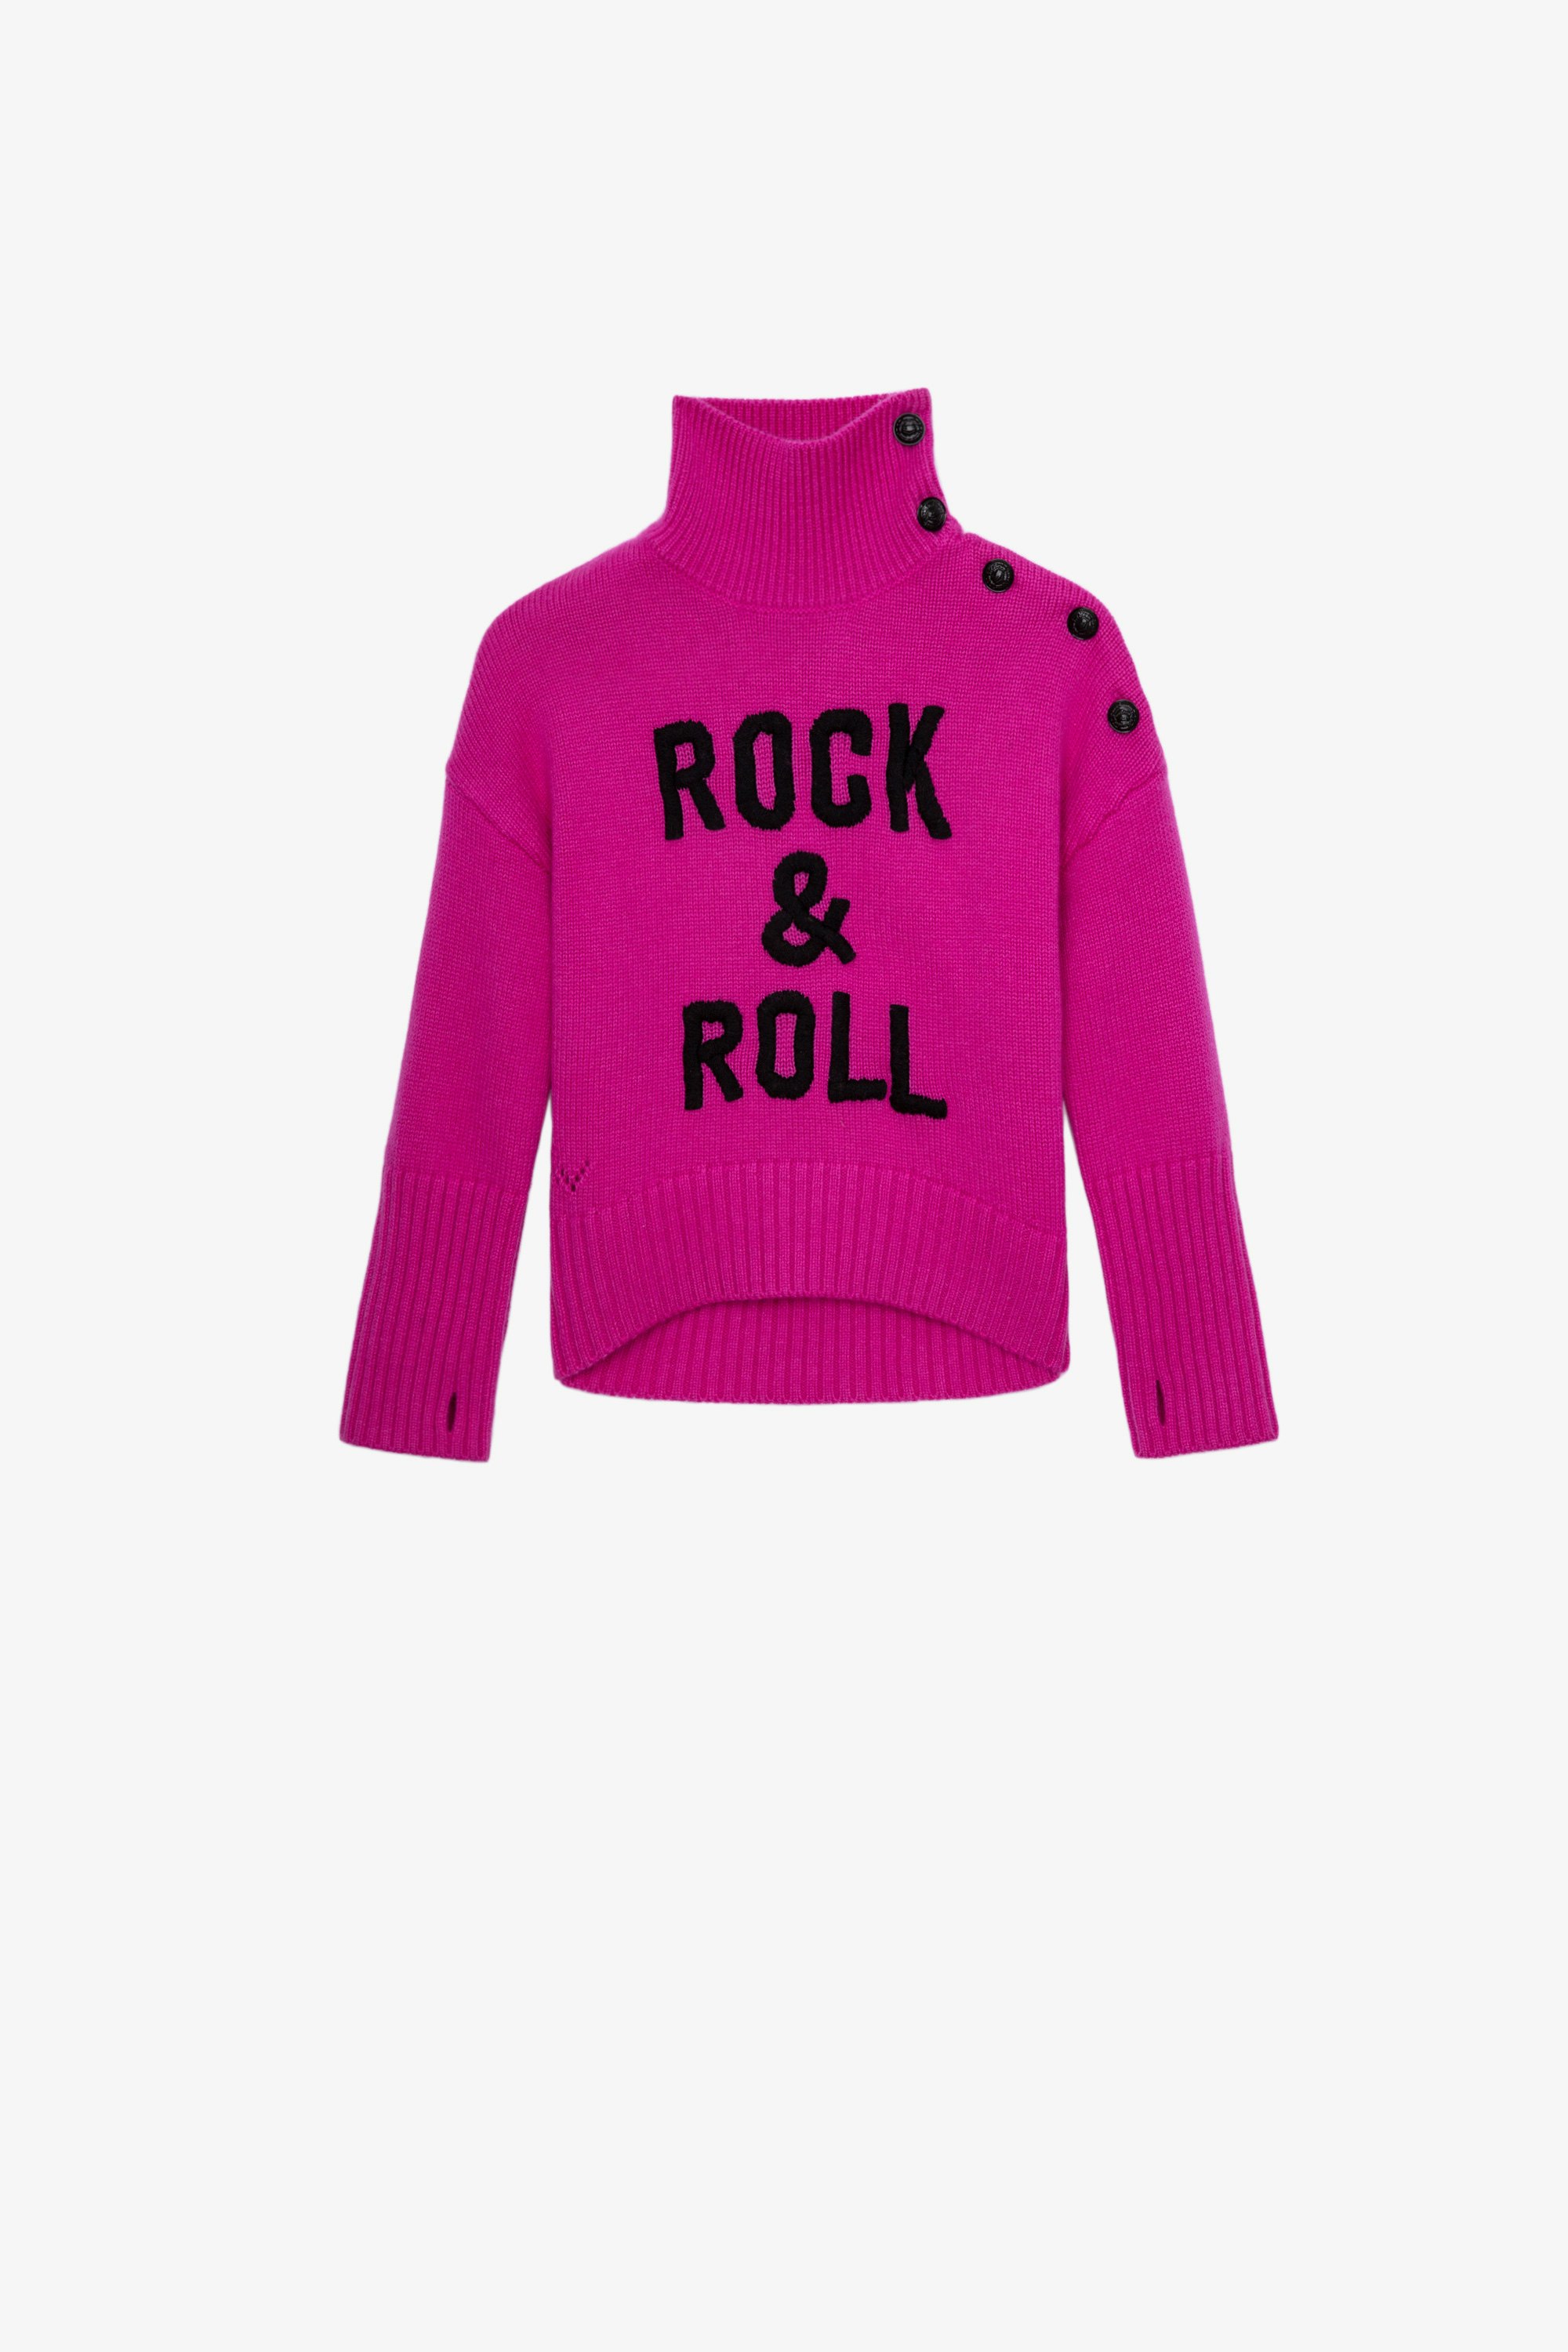 Maglione Alma Junior  Maglione dolcevita rosa con maniche lunghe decorato con scritta "Rock & Roll" e bottoni sulla spalla - Junior 